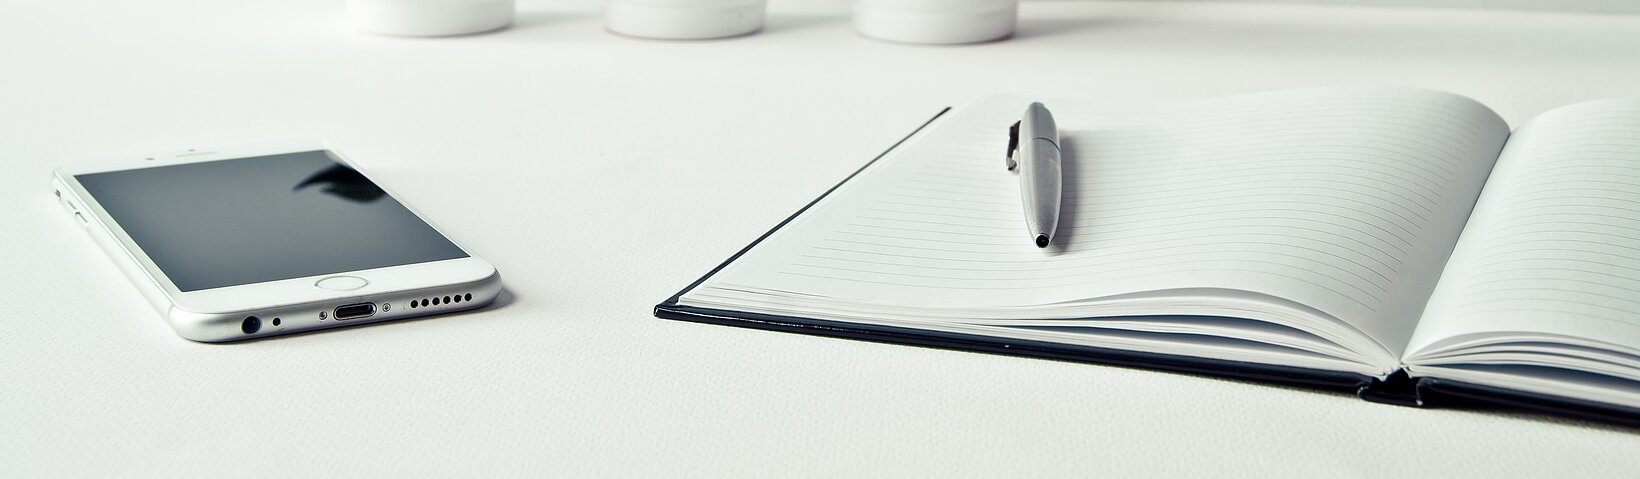 Tablet PC und Buch mit Stift auf weißem Tisch 